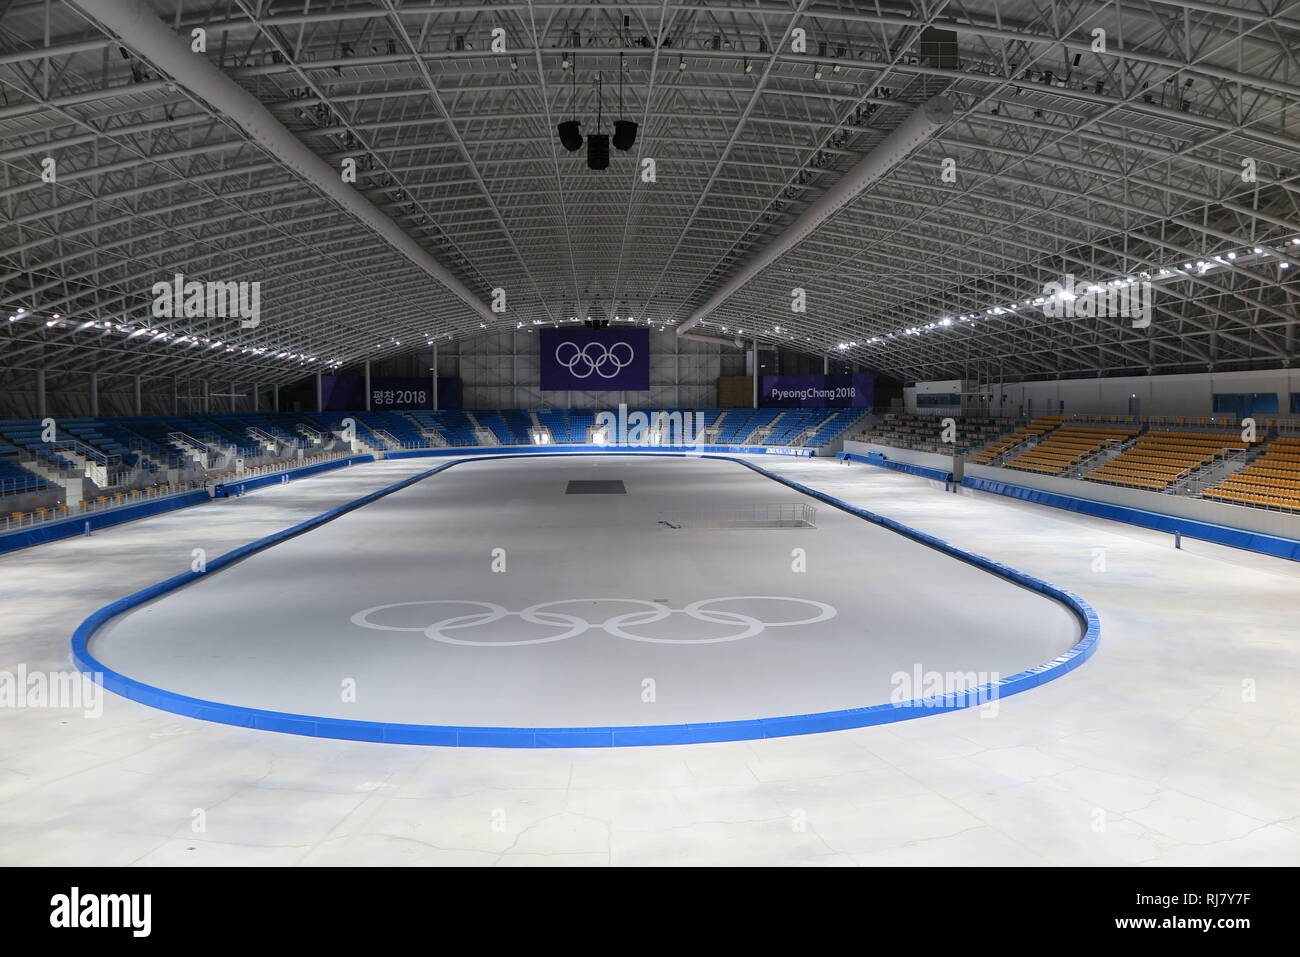 28 janvier 2019, la Corée du Sud, Gangneung : l'arène de patinage de vitesse des Jeux Olympiques d'hiver de 2018 à Pyeongchang. Les arènes de sports dans le Parc olympique de Gangneung, sur la côte est de la Corée du Sud donne l'impression que l'anneau spectacle pourrait commencer de nouveau demain. Aucun signe visible de détérioration. (Dpa 'un an après Pyeongchang - le lourd héritage des Jeux d'hiver') Photo : Dirk Godder/dpa Banque D'Images